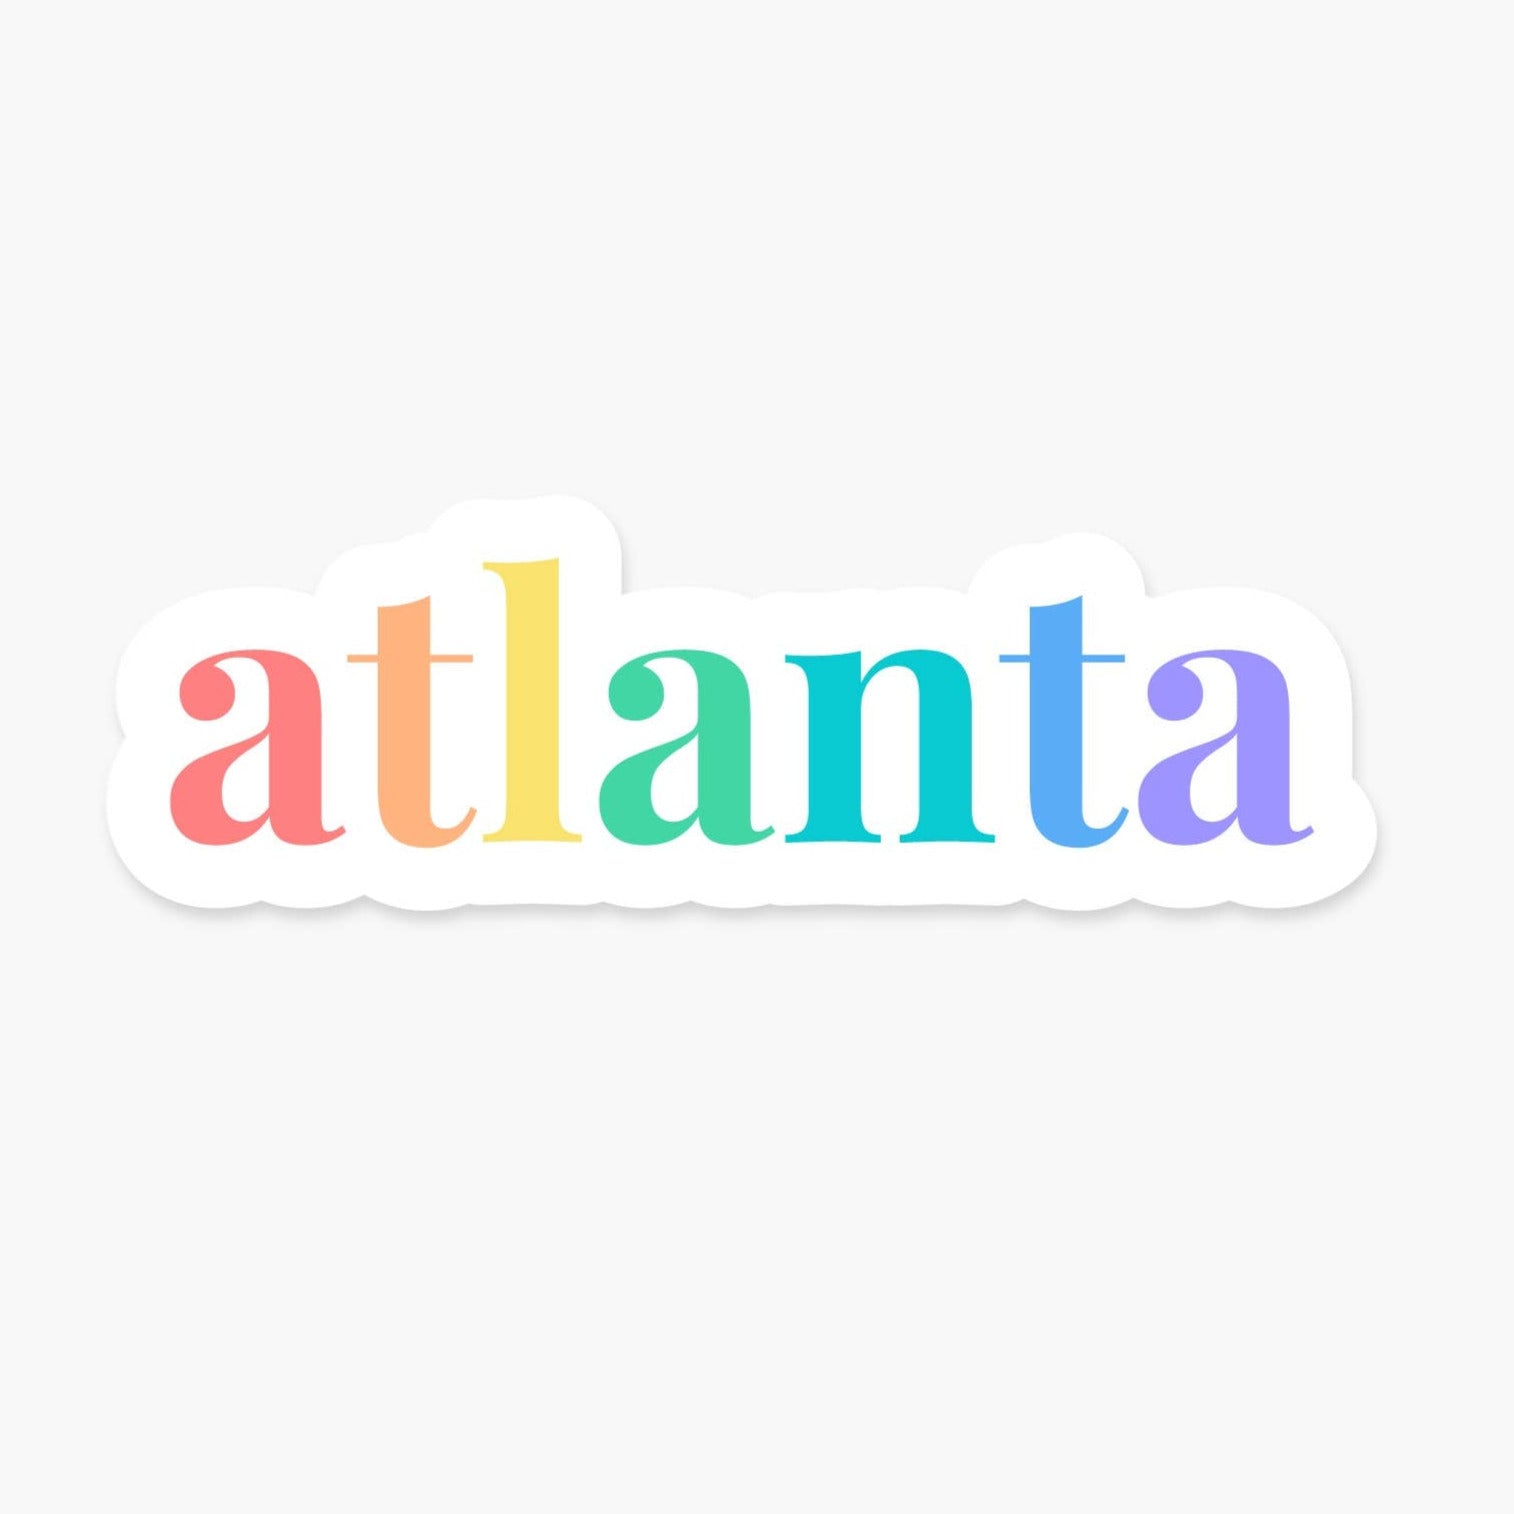 Atlanta Colorful Sticker